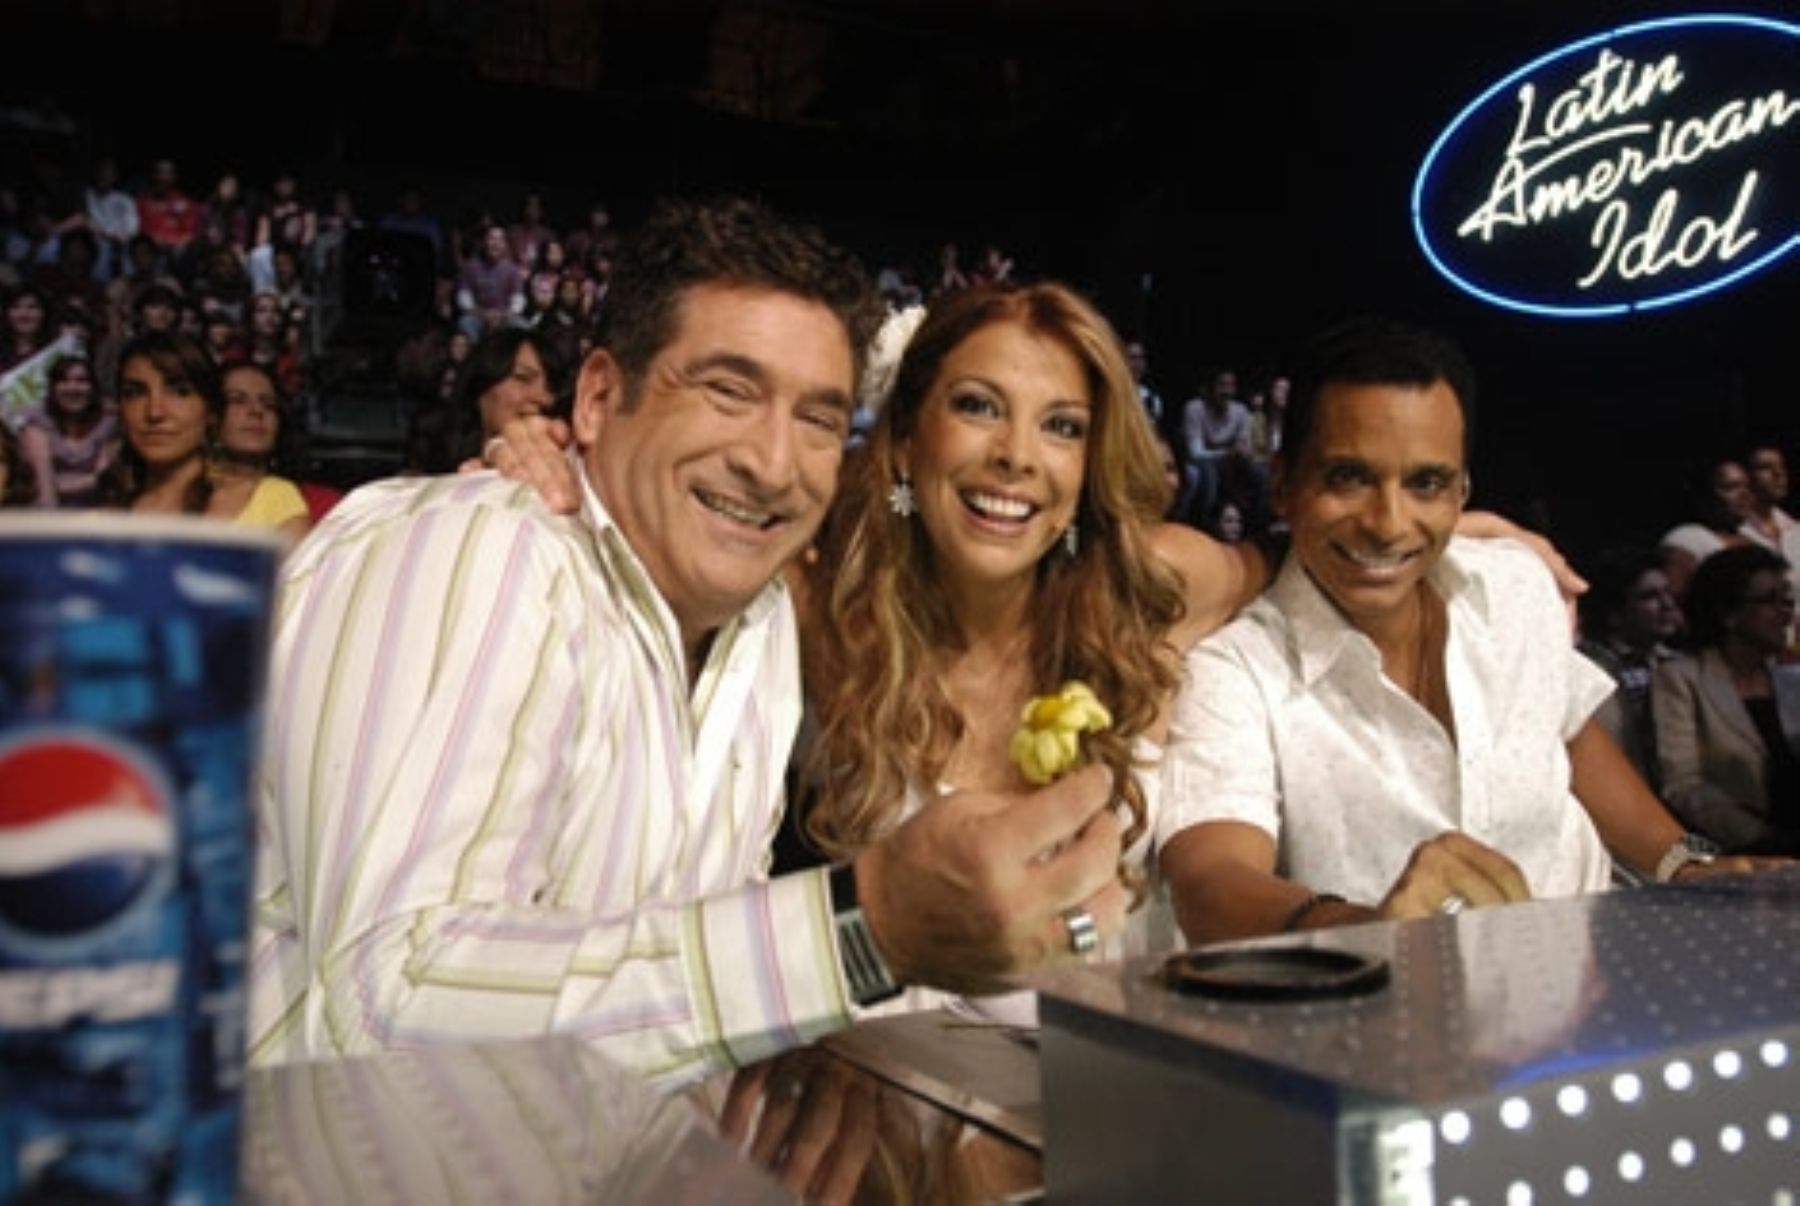 El jurado, integrado por Gustavo Sánchez, Mimí y Jon Secada. Foto: Cortesía Latin American Idol.